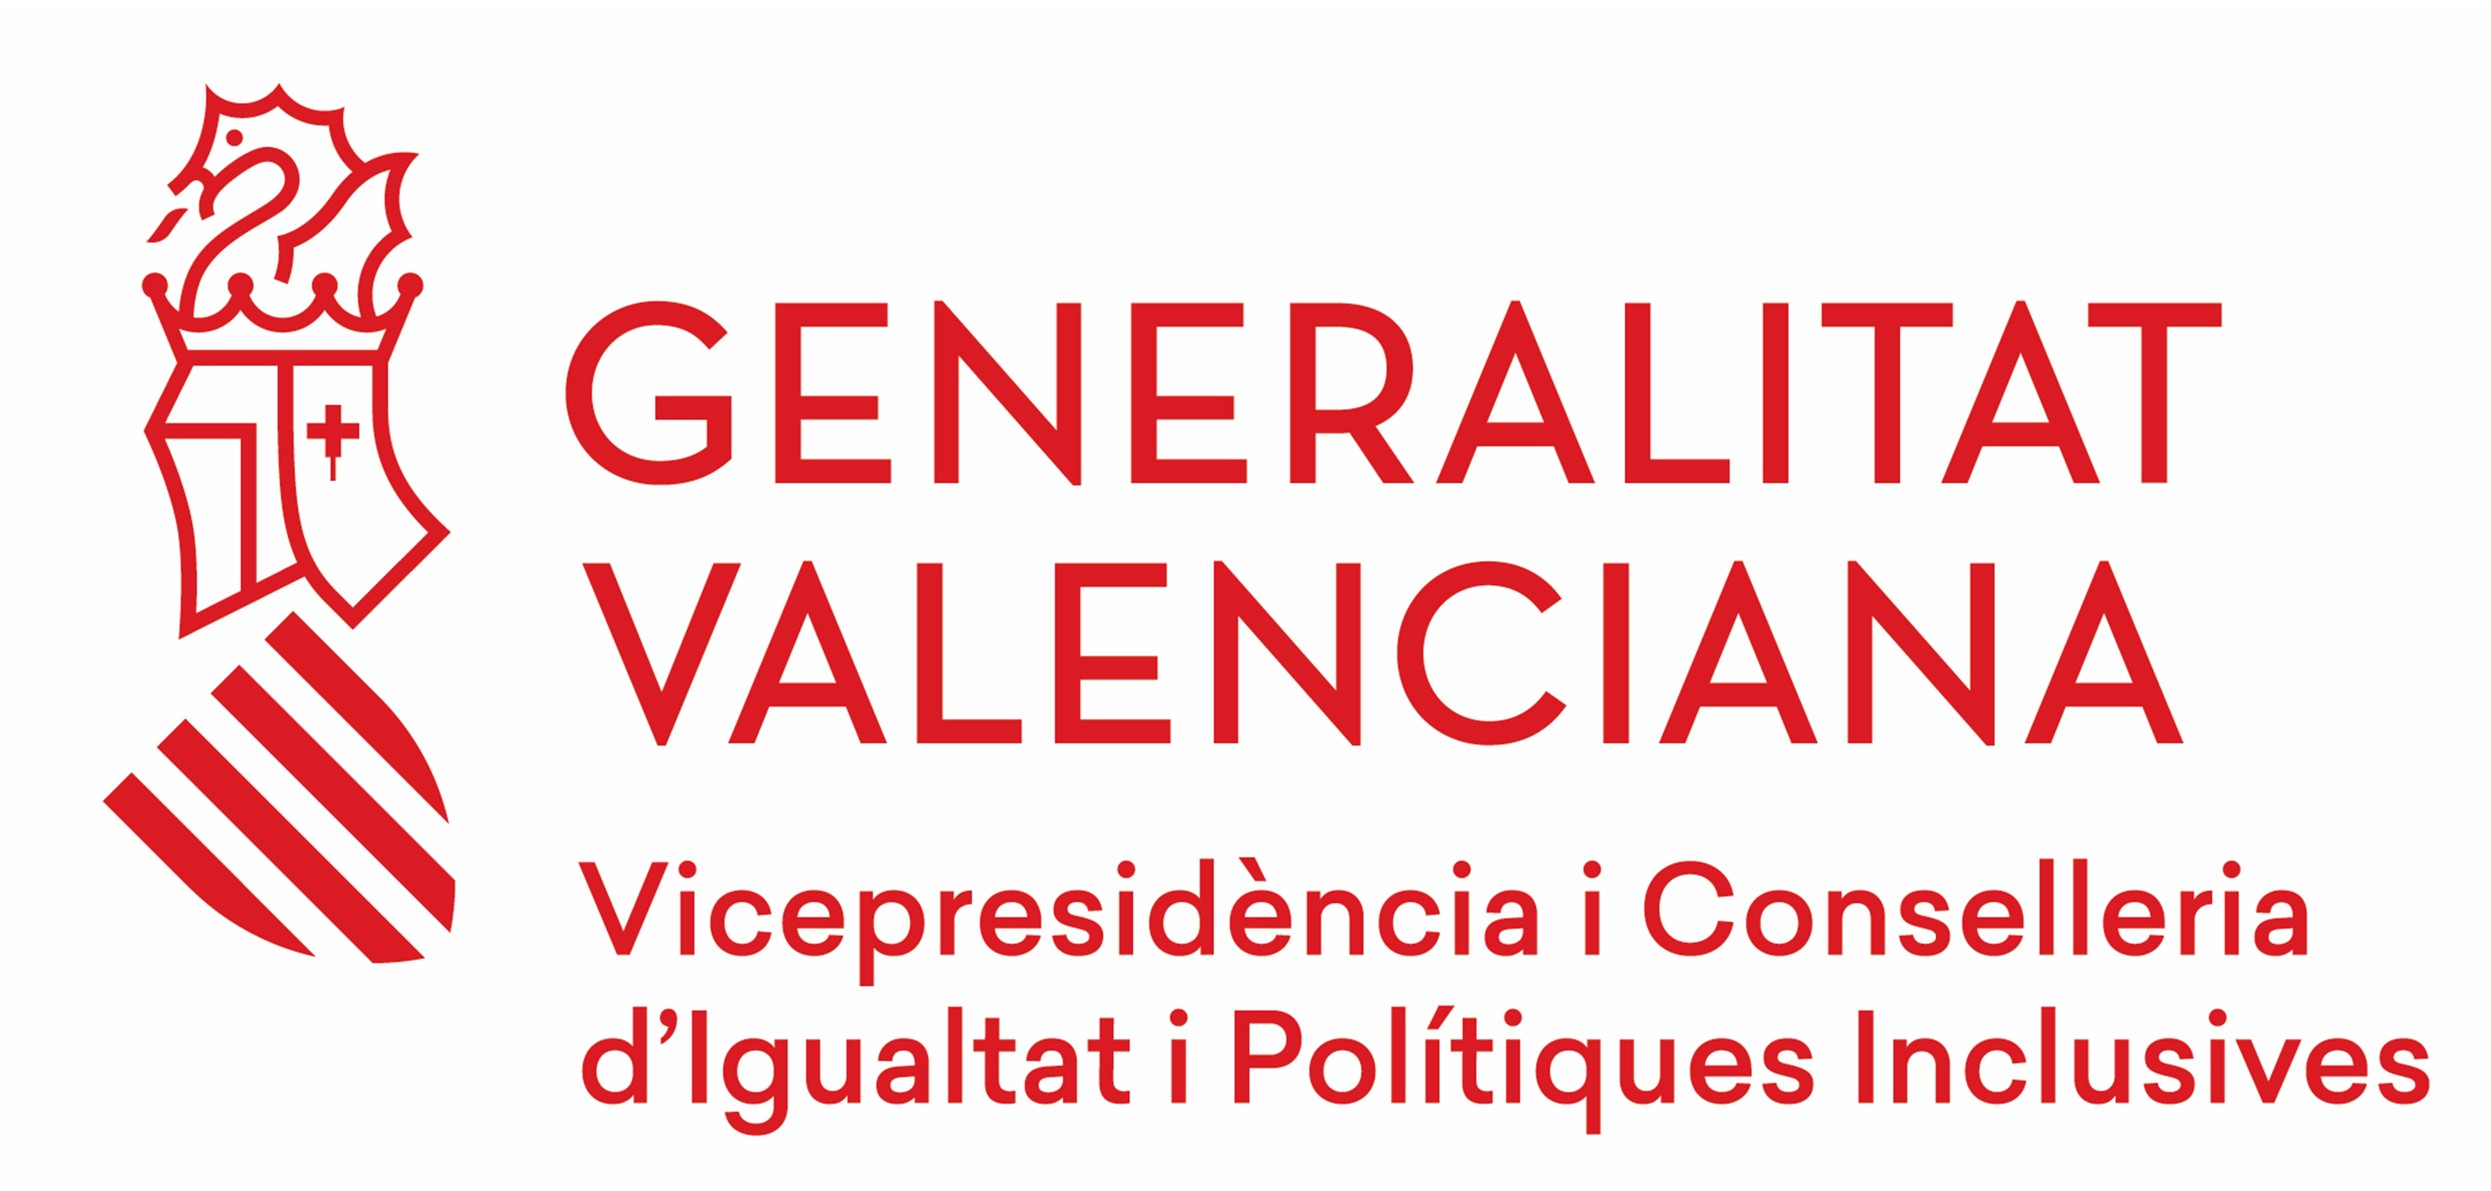 Logo Conselleria Igualtat i Polítique Inclusives